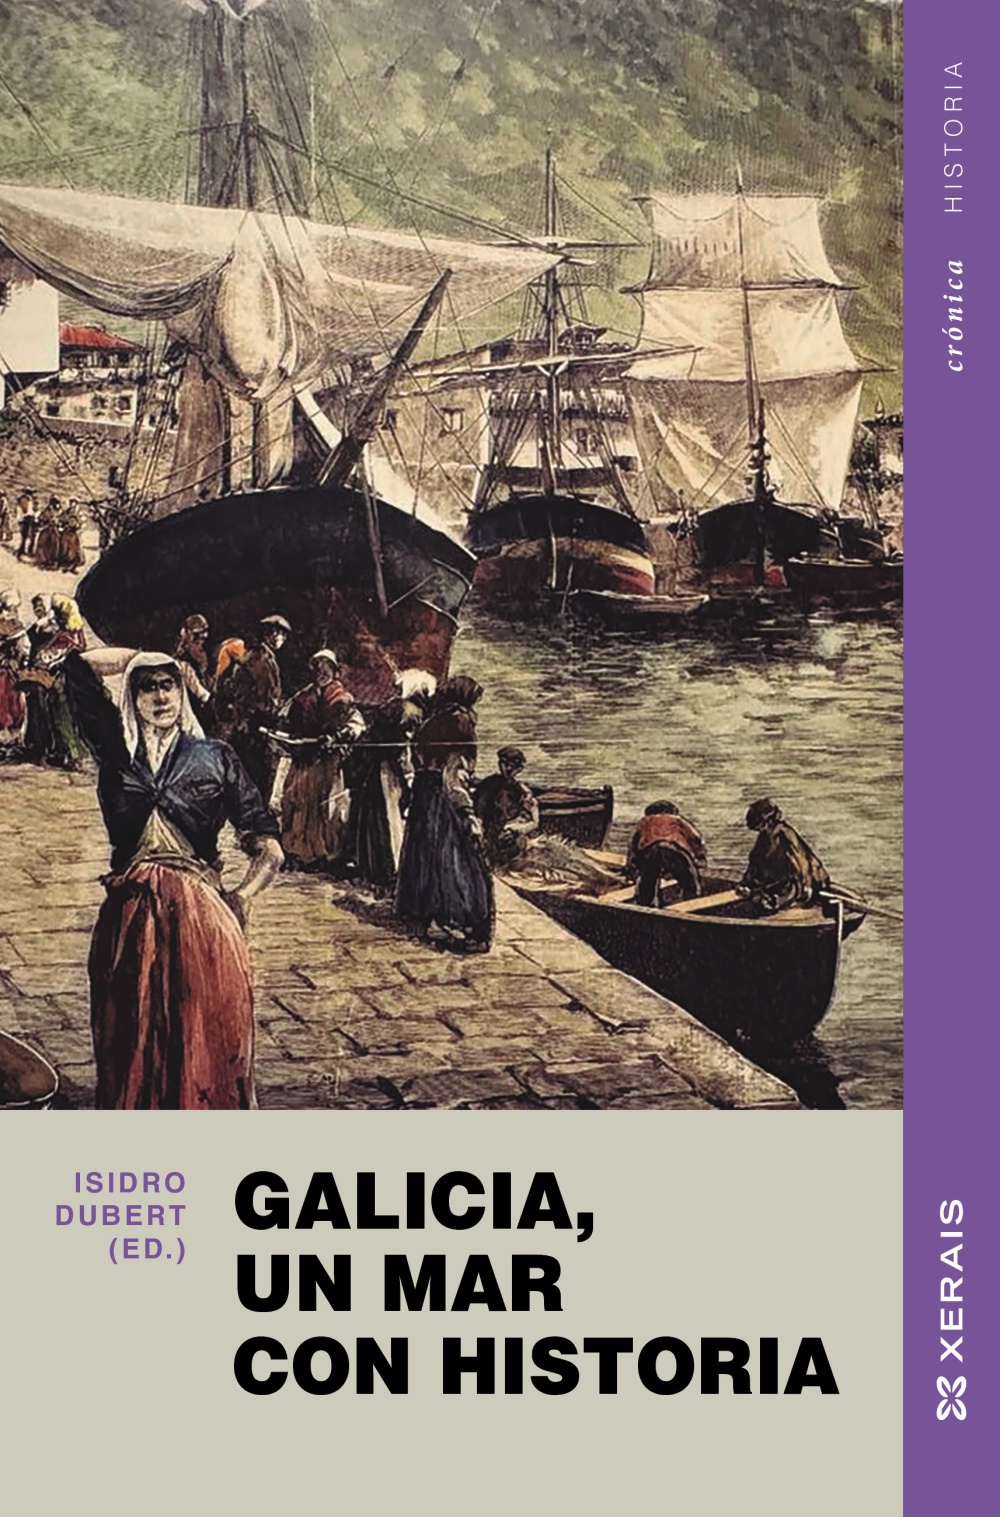 Galicia, un mar con historia